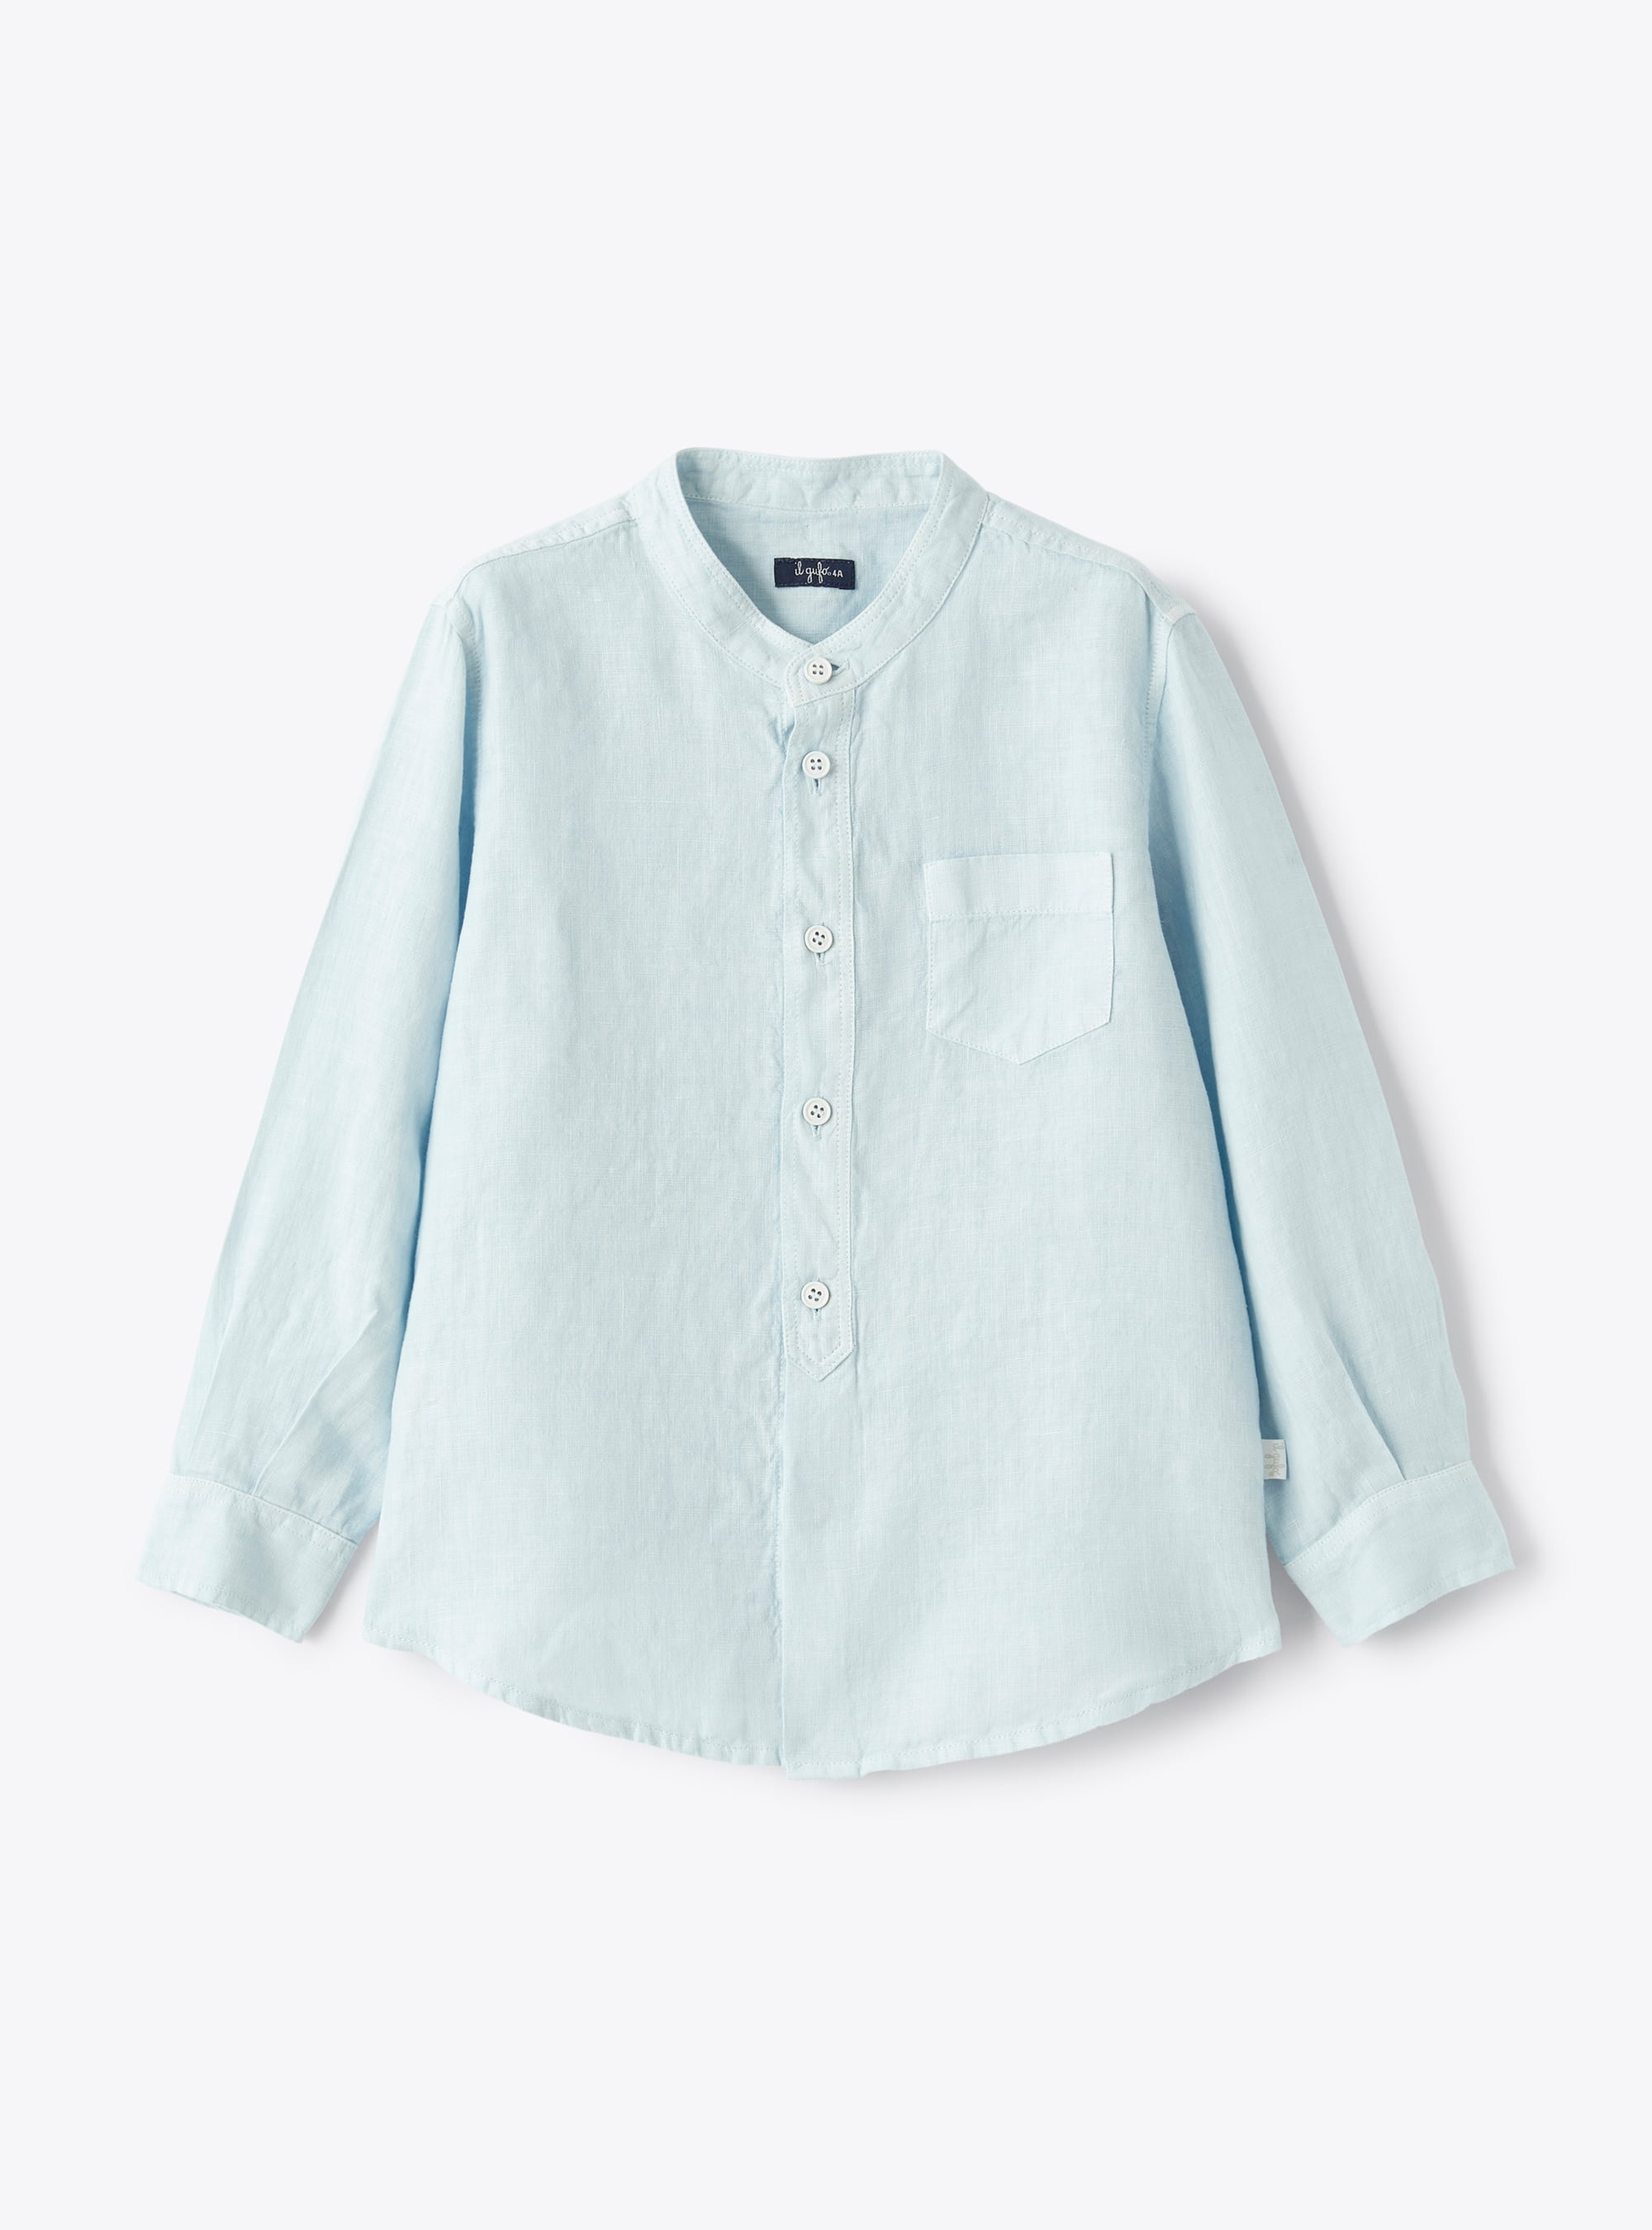 Mandarin-collar shirt in sky-blue linen - Shirts - Il Gufo